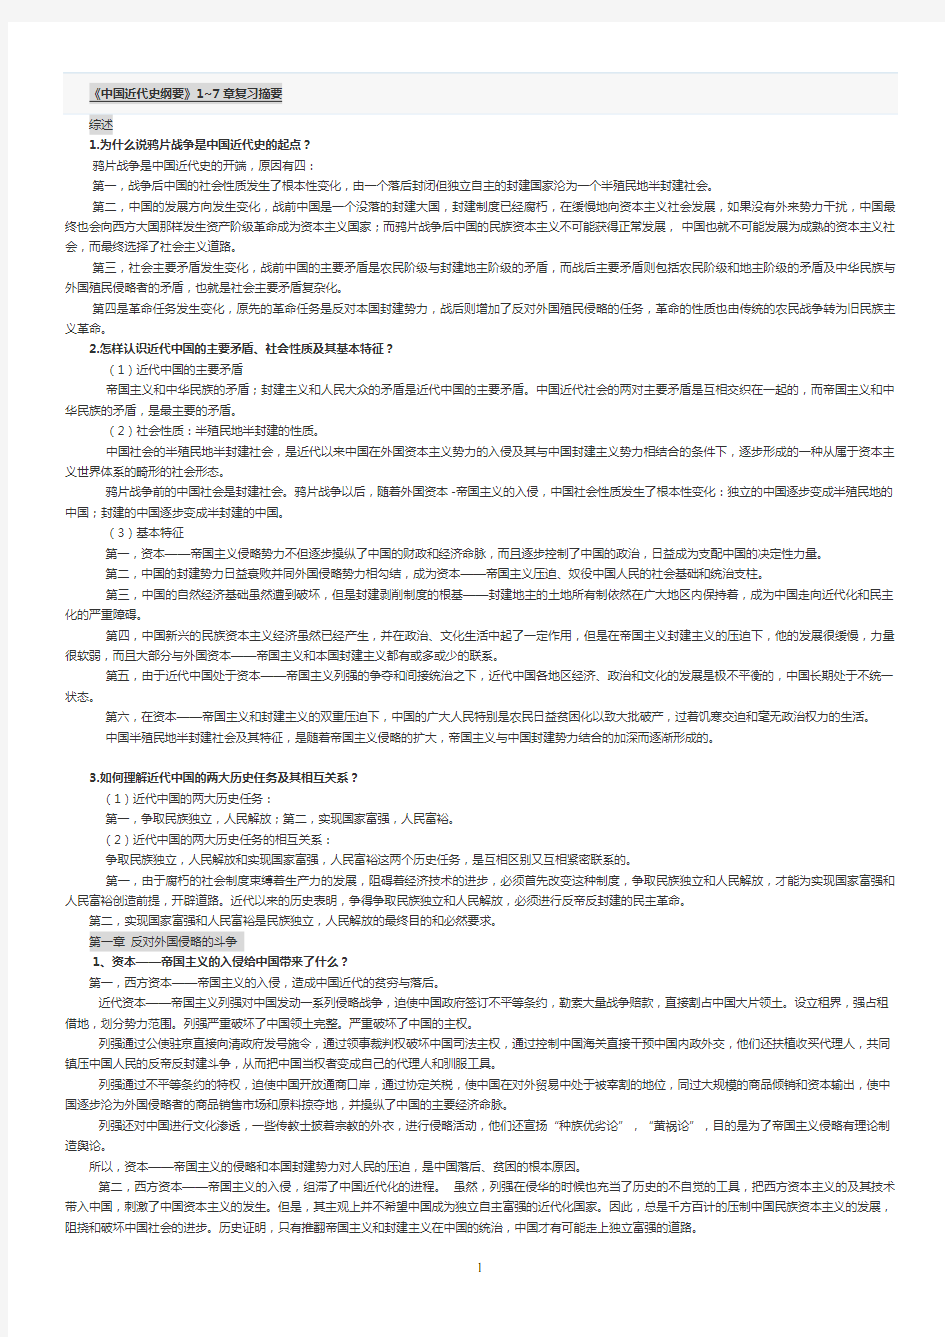 中国近代史纲要1~8章复习资料_简答题_论述题